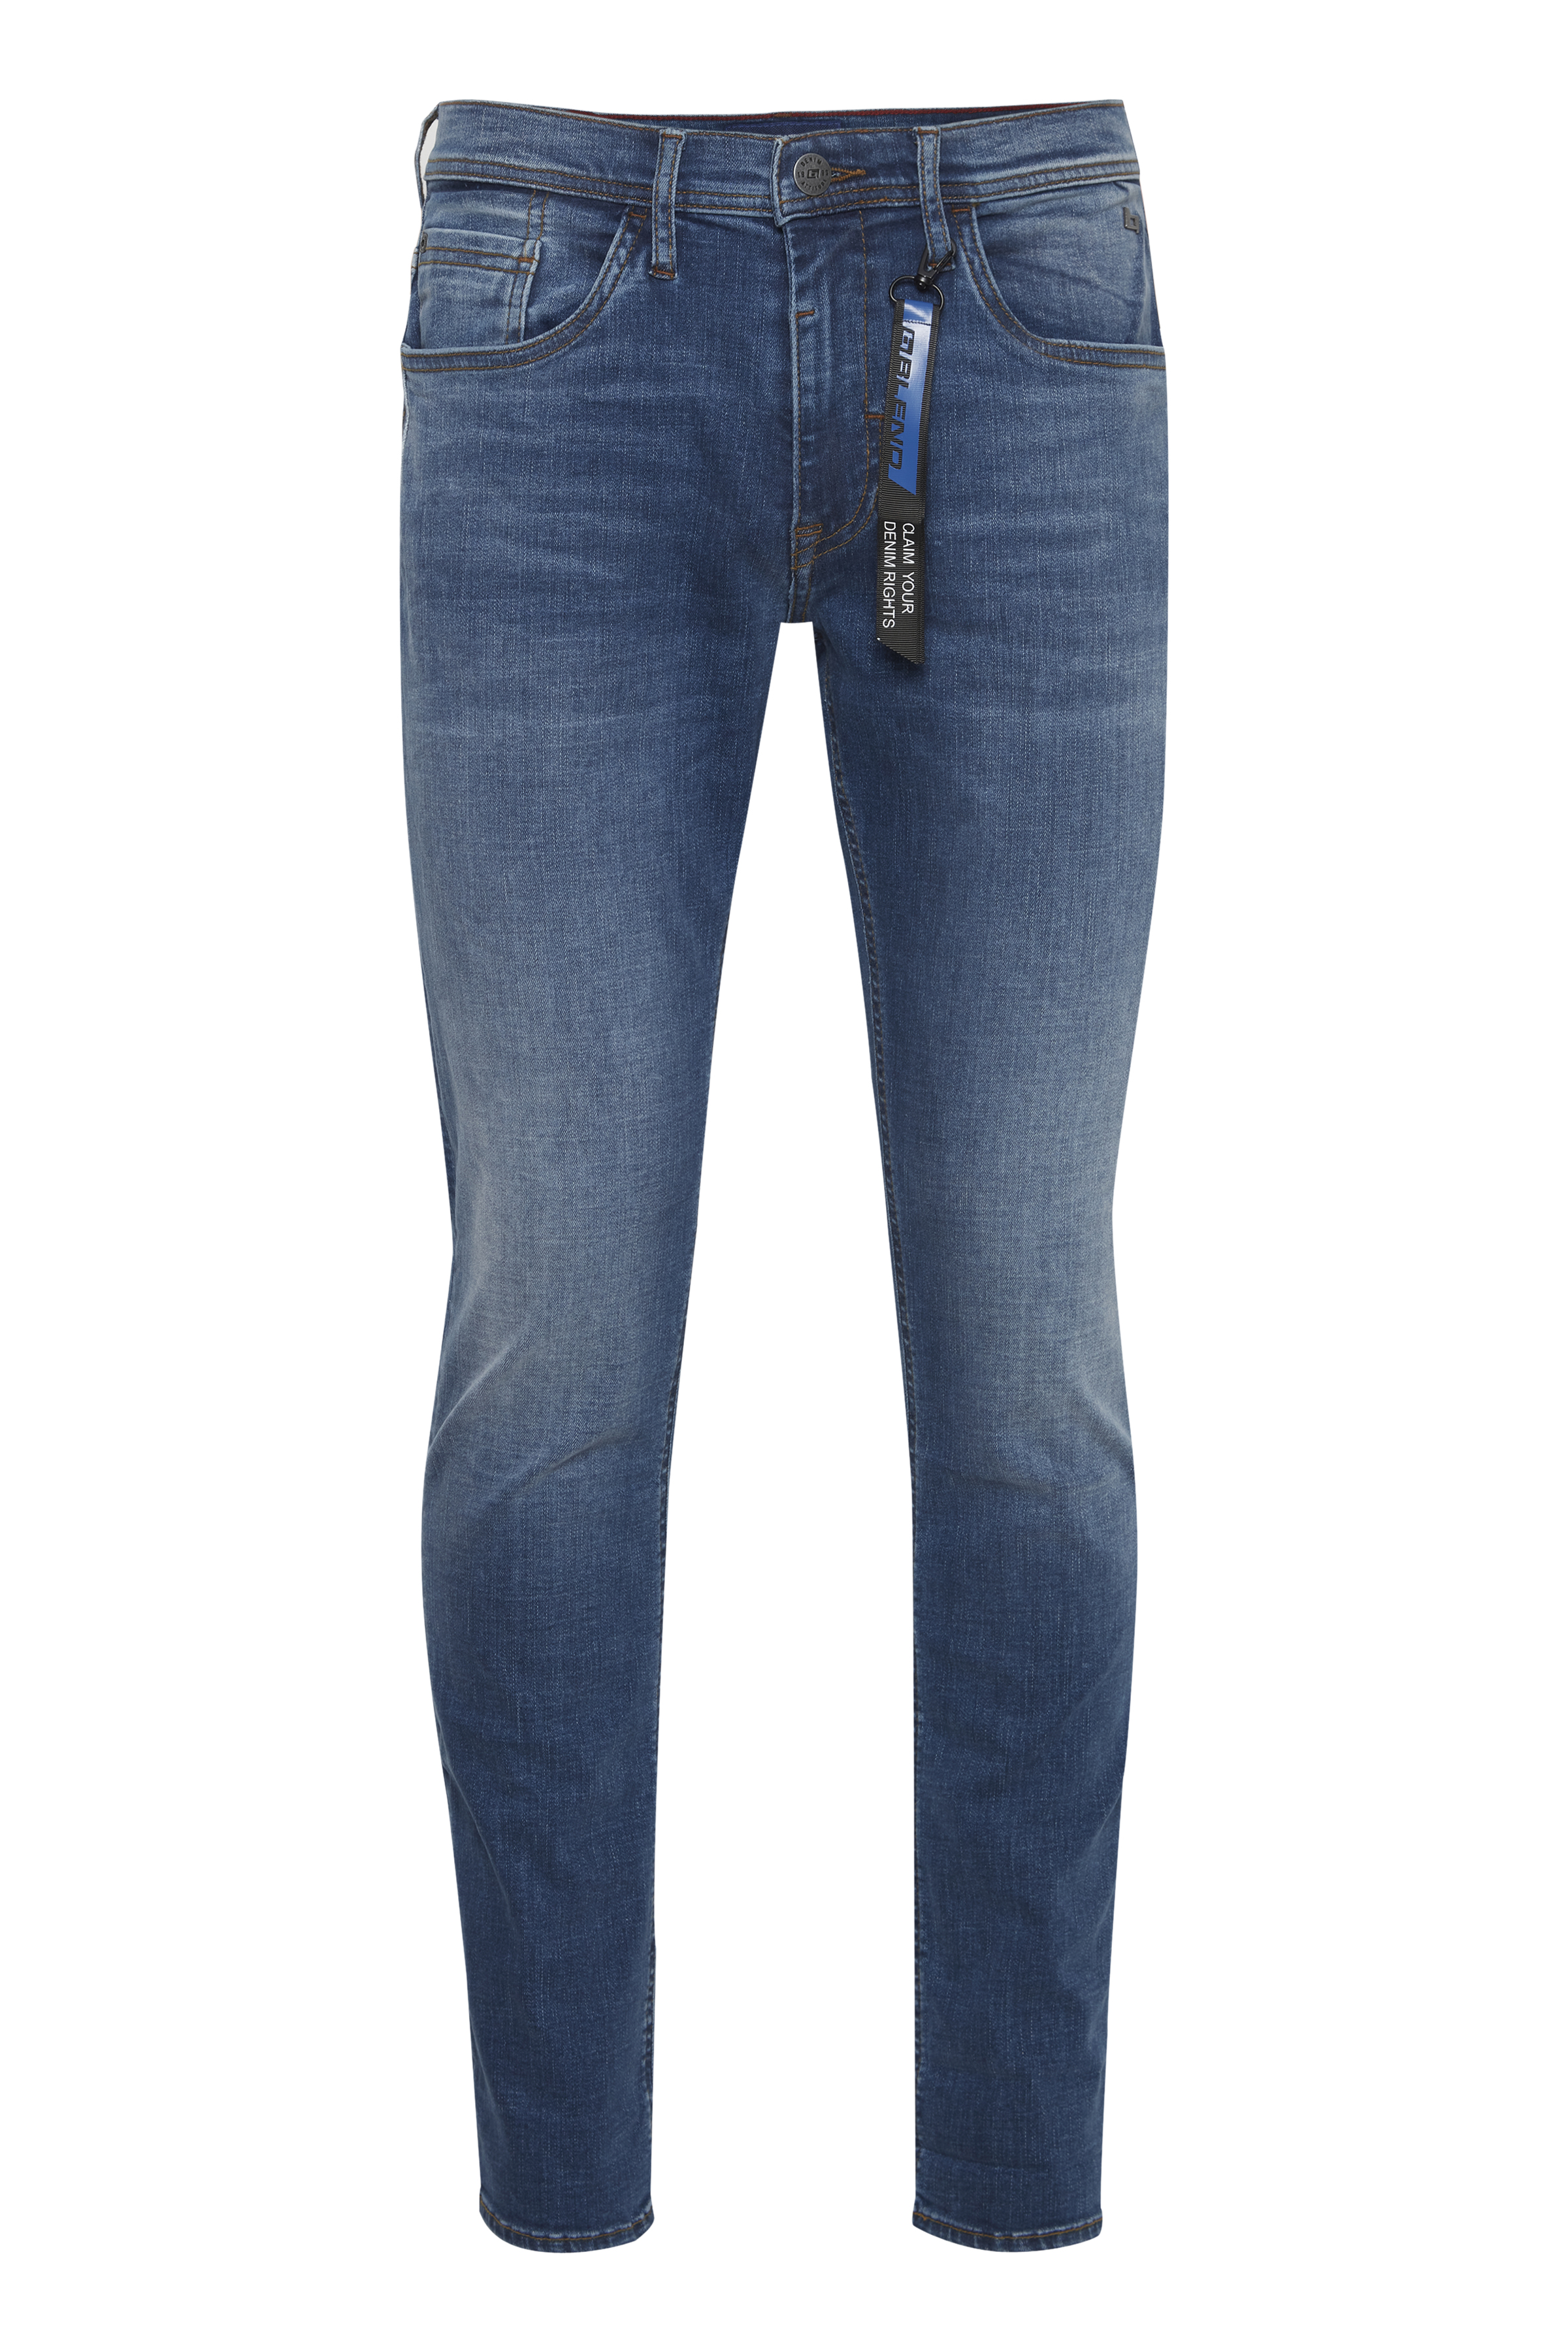 BLEND JEANS TWISTER | | Männer | Jeans-Manufaktur Jeans middle MULTIFLEX MULTIFLEX | Twister buffies blue Jeans - Blend | denim 20712391.200291